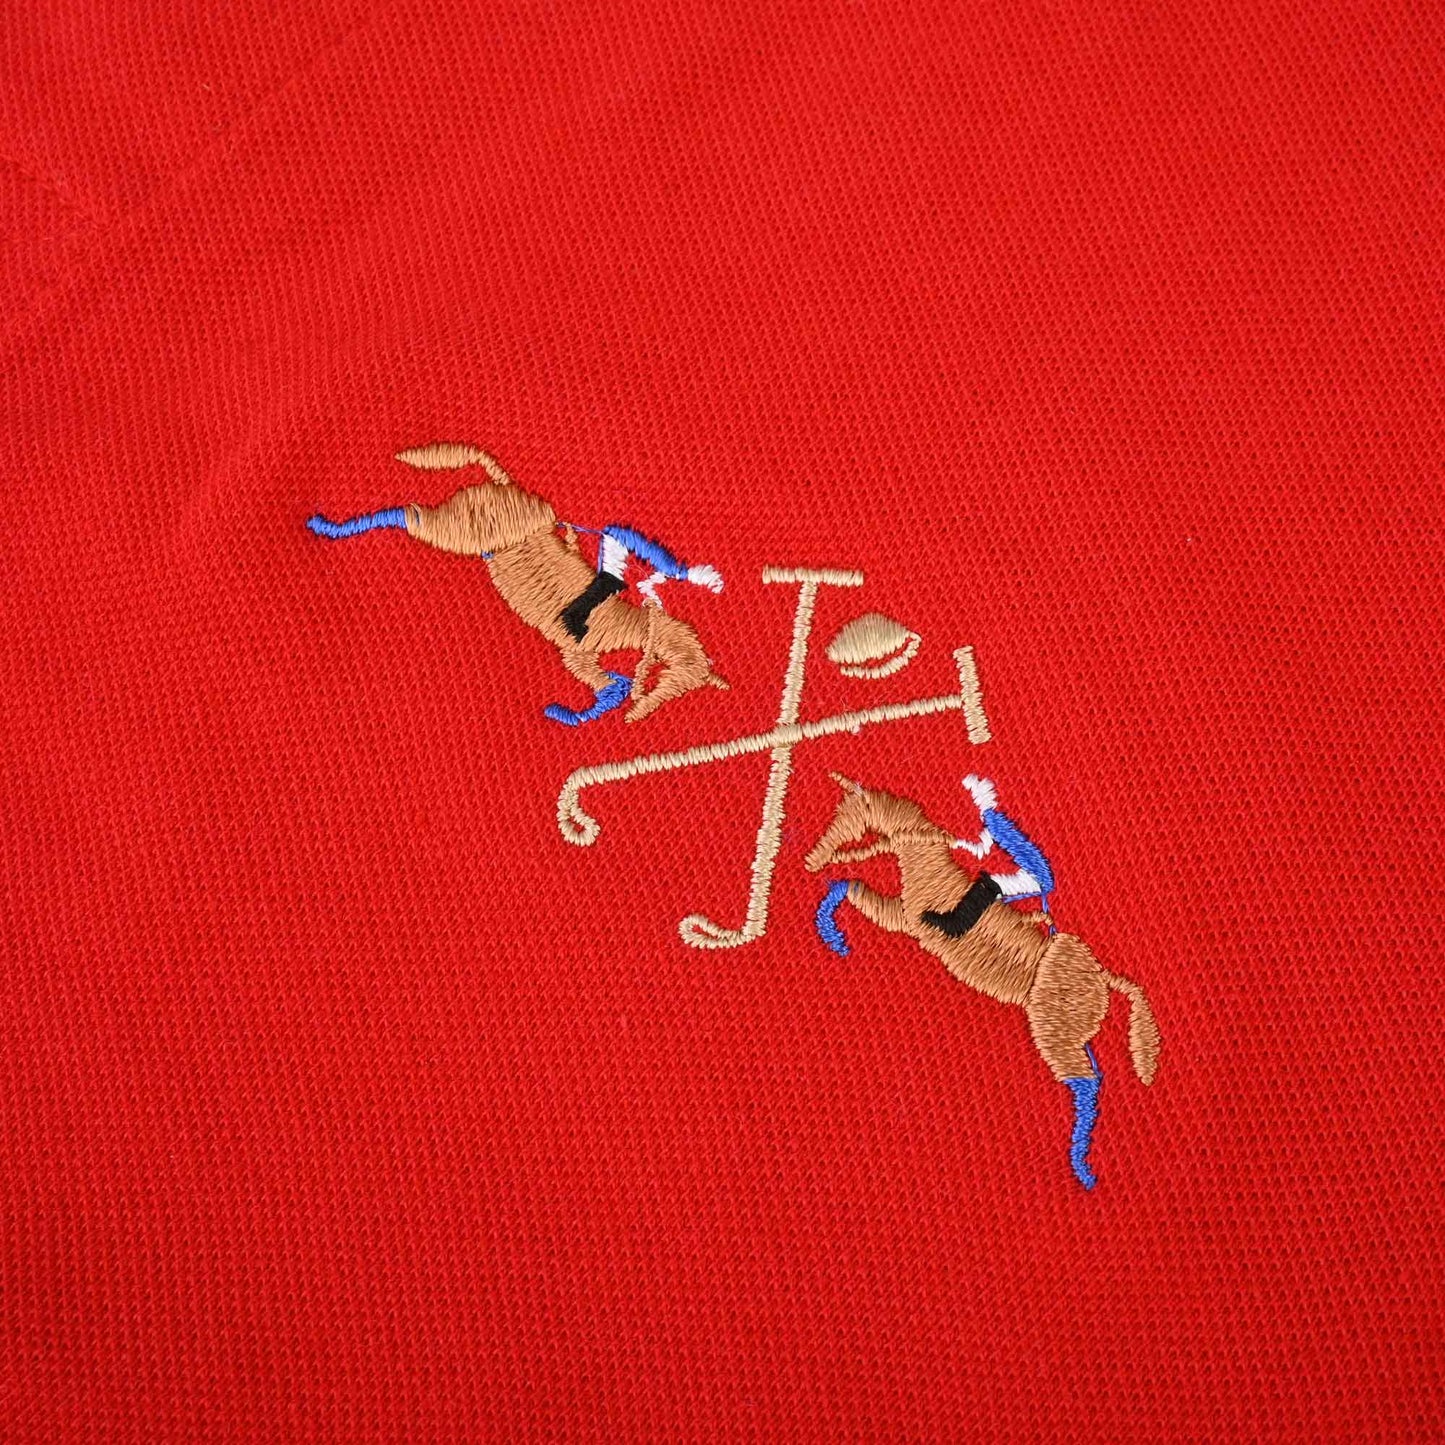 Polo Republica Men's Dual Pony & Crest Embroidered Short Sleeve Polo Shirt Men's Polo Shirt Polo Republica 